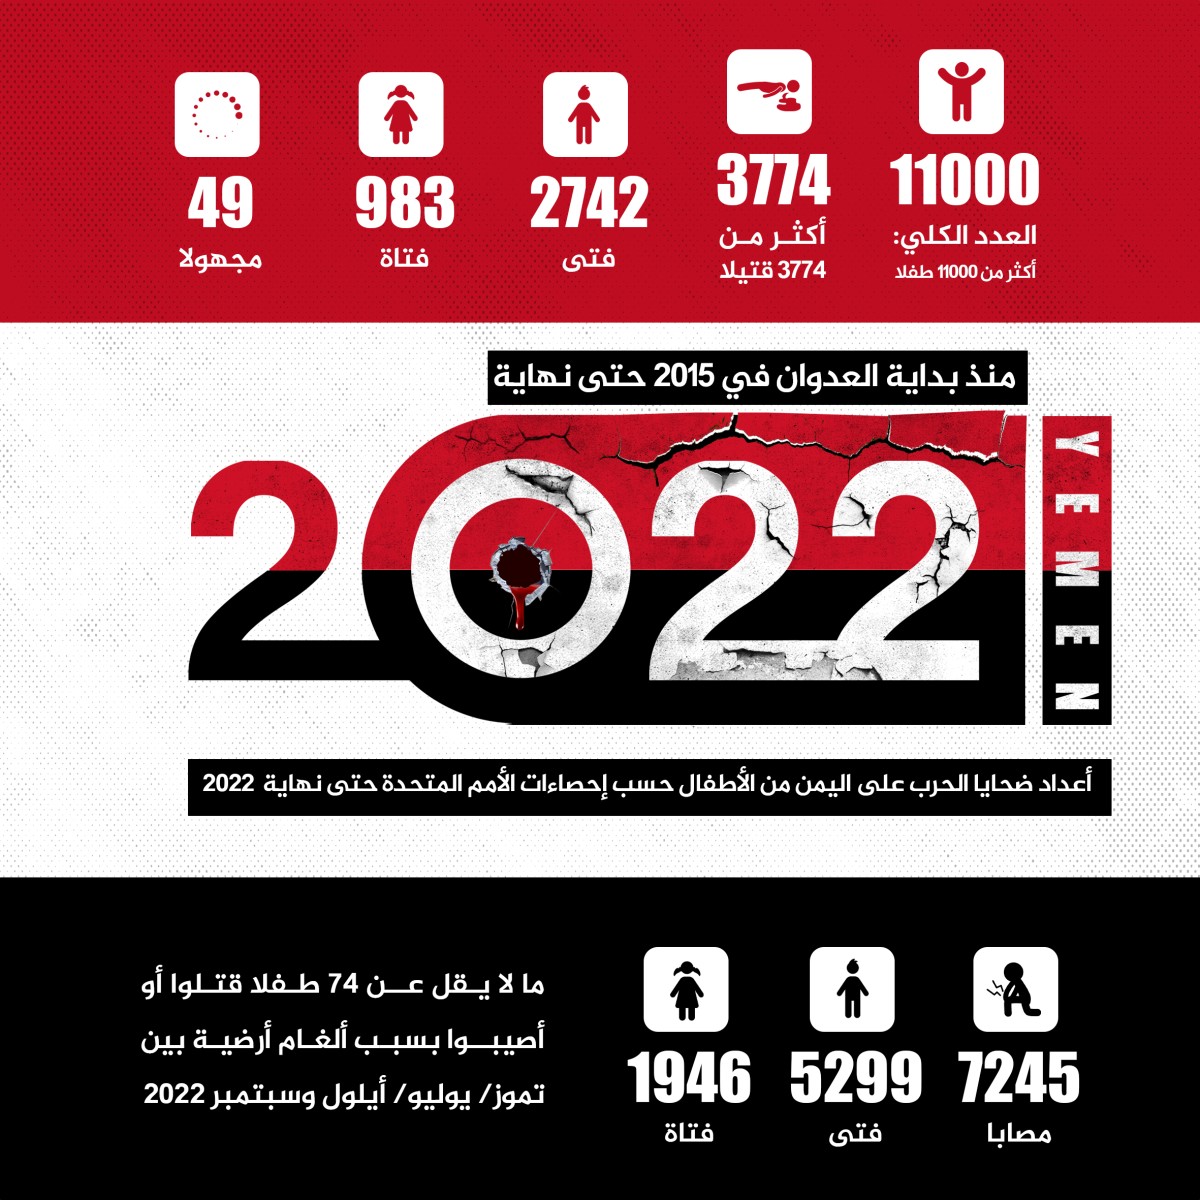 انفوجرافيك / اعداد ضحایا علی الیمن من الاطفال 2015-2022